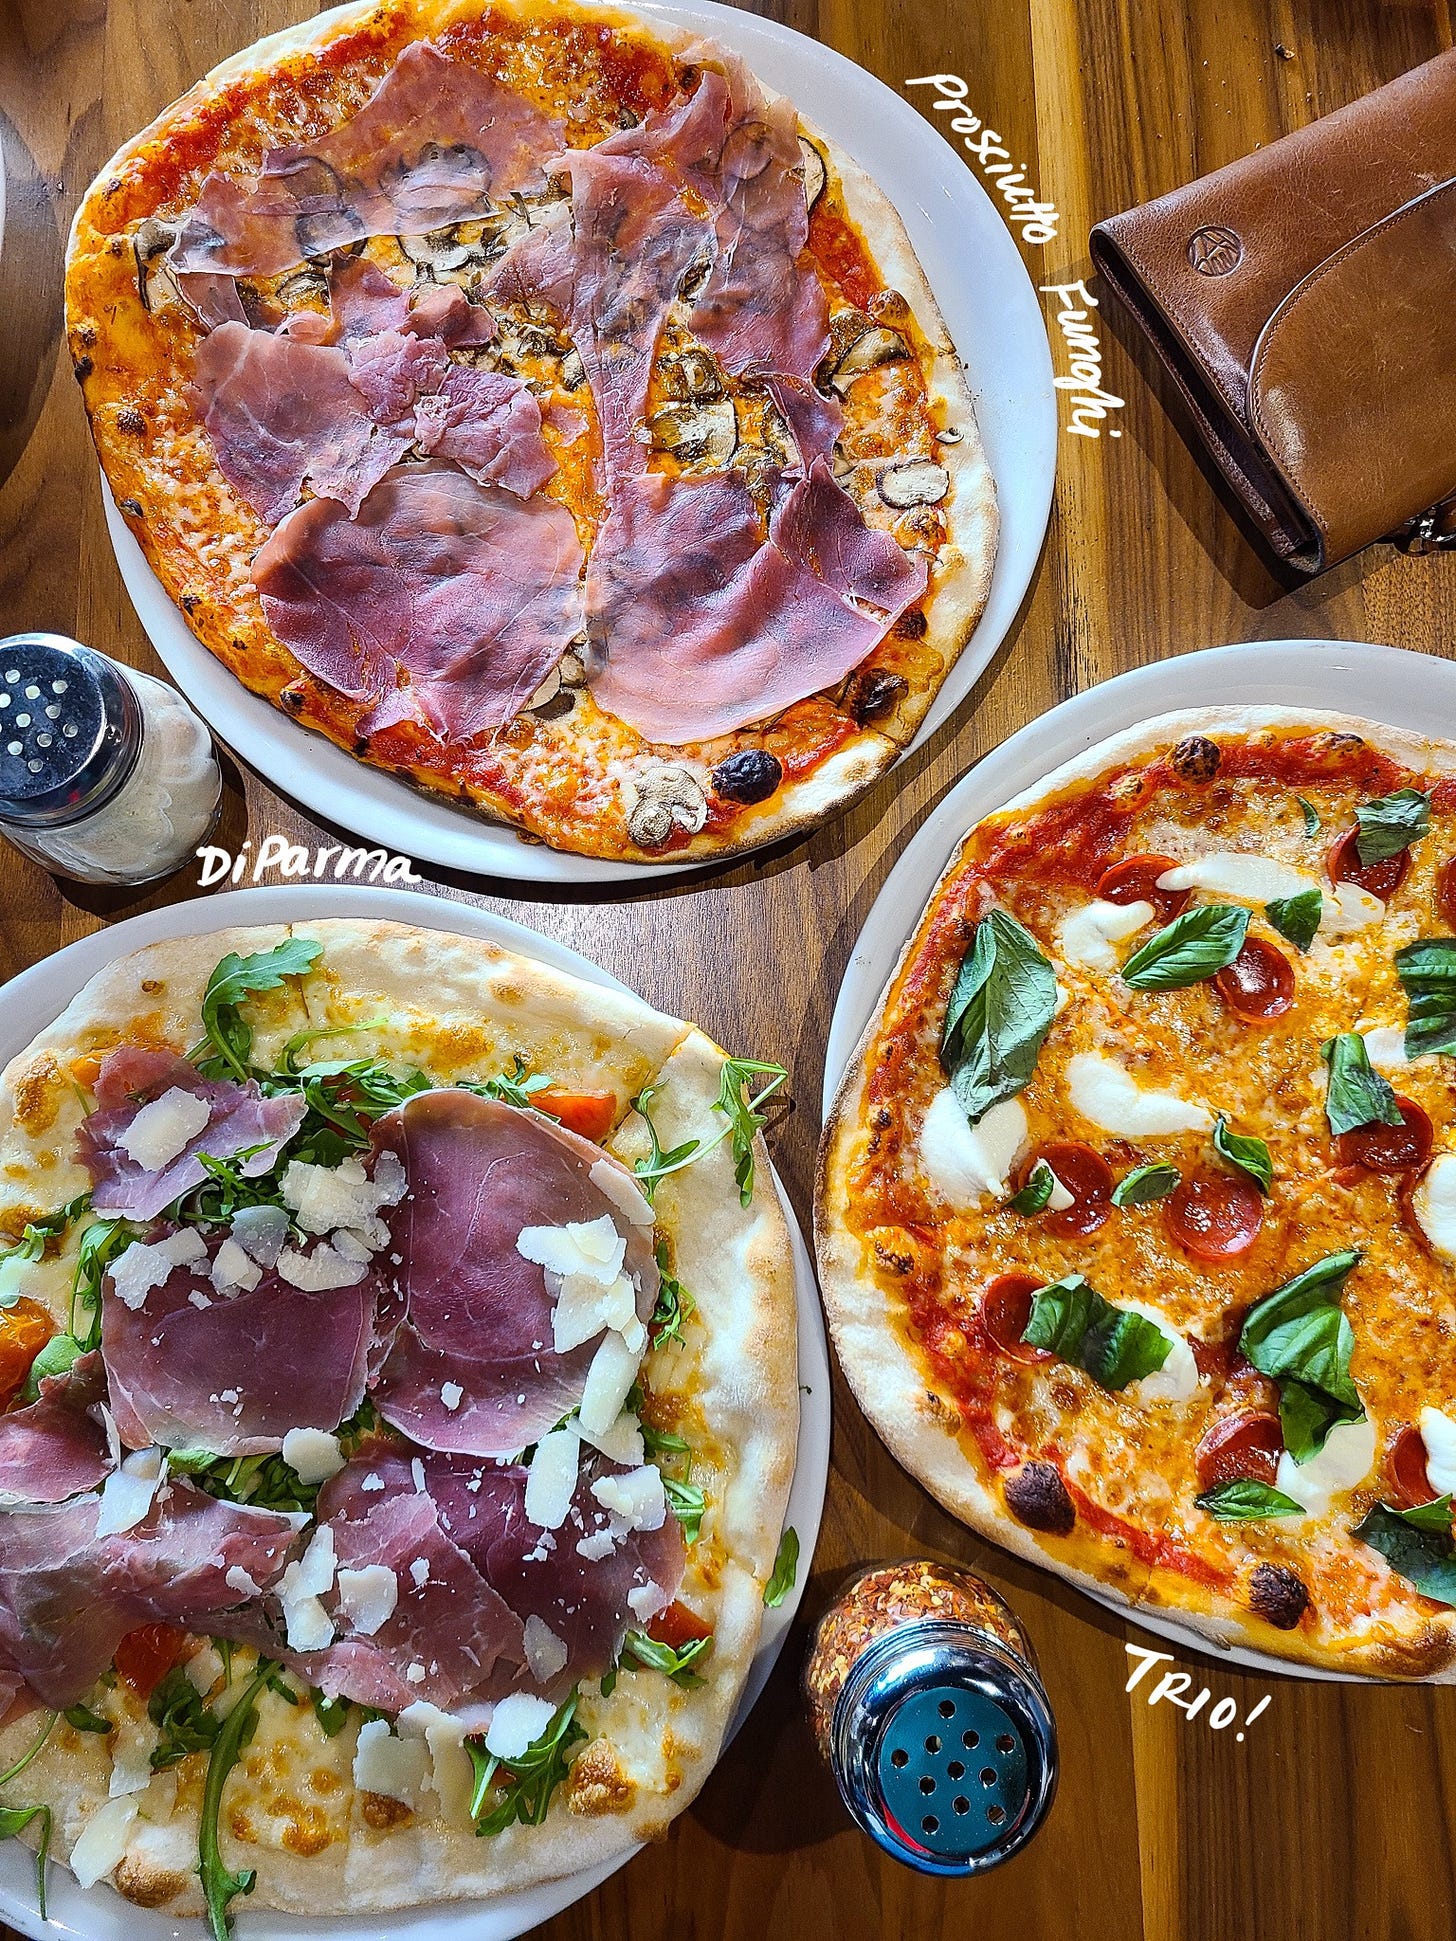 Pizzeria Omaggio lunch spread with 3 pizzas